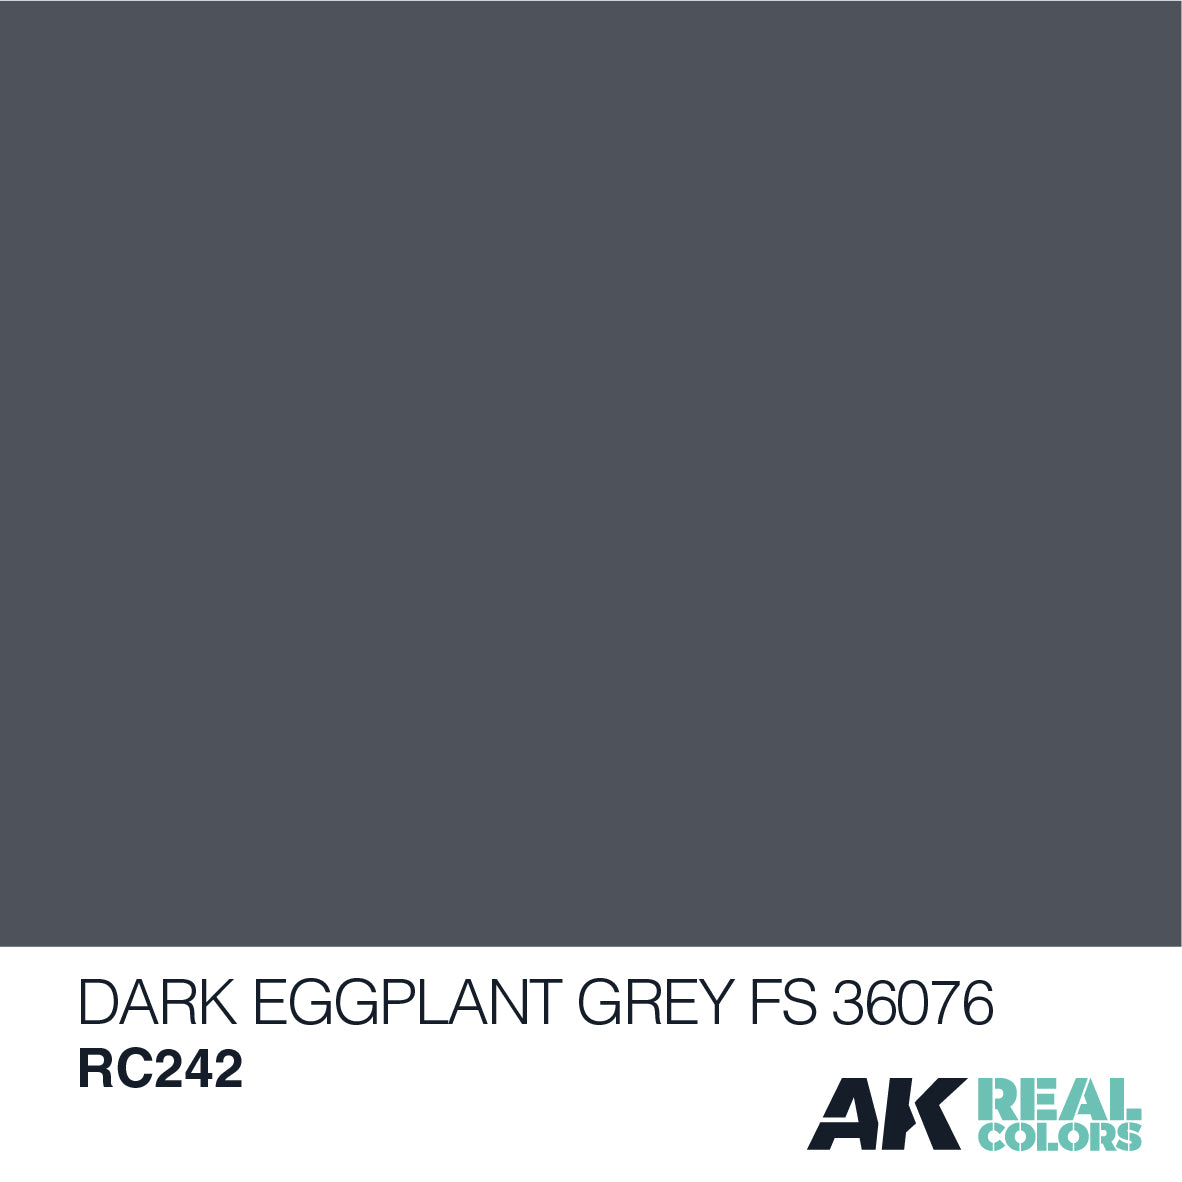 Dark Eggplant Grey FS 36076 10ml - Loaded Dice Barry Vale of Glamorgan CF64 3HD